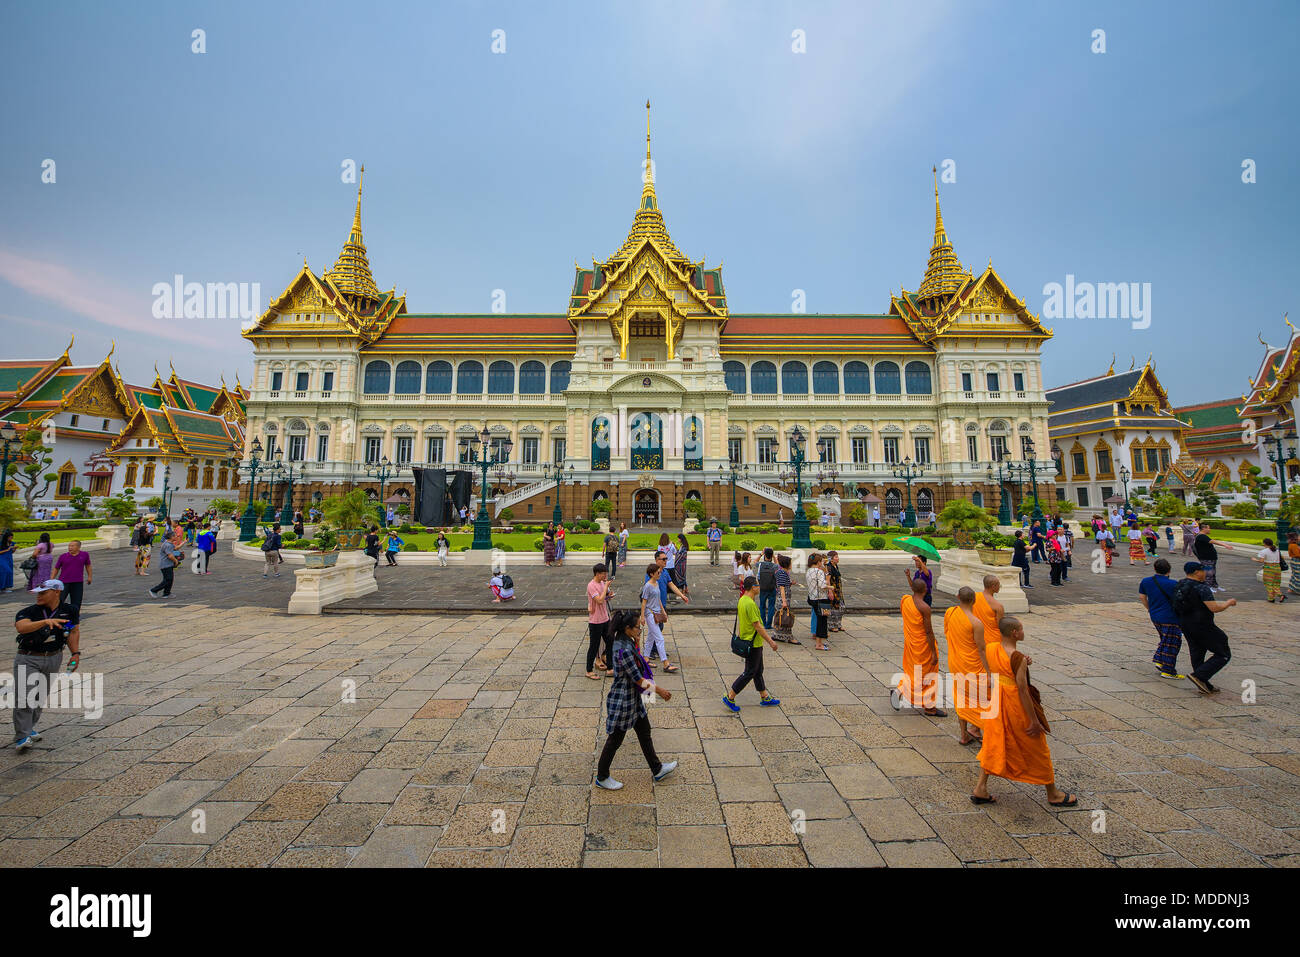 Grand palace in Bangkok, Thailand Stock Photo